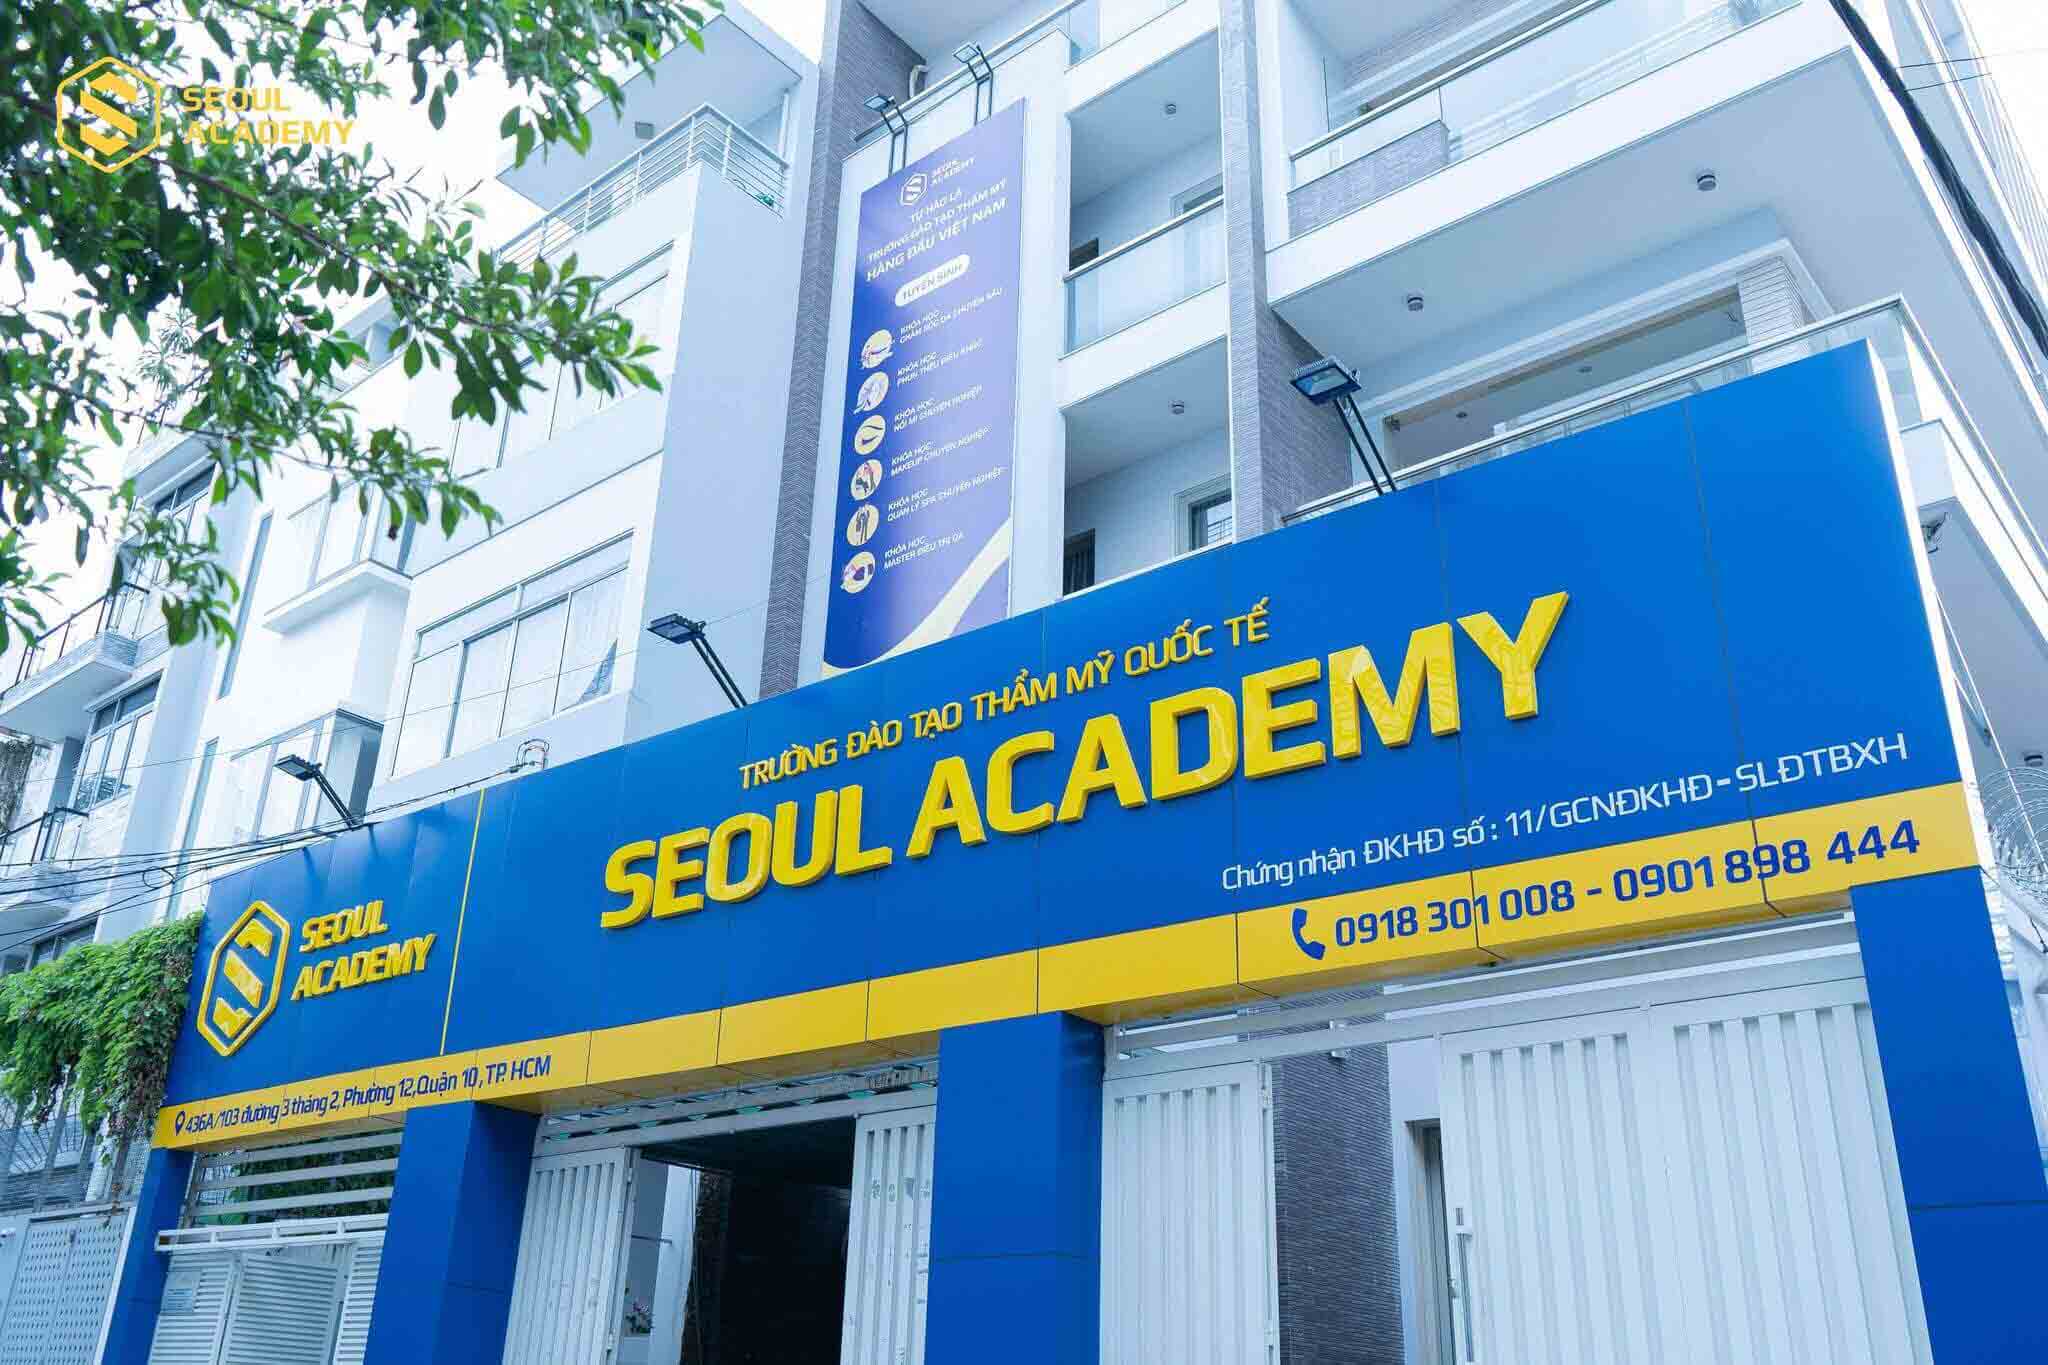 Seoul Academy là trường đào tạo nghề nail uy tín, chất lượng hàng đầu Việt Nam.